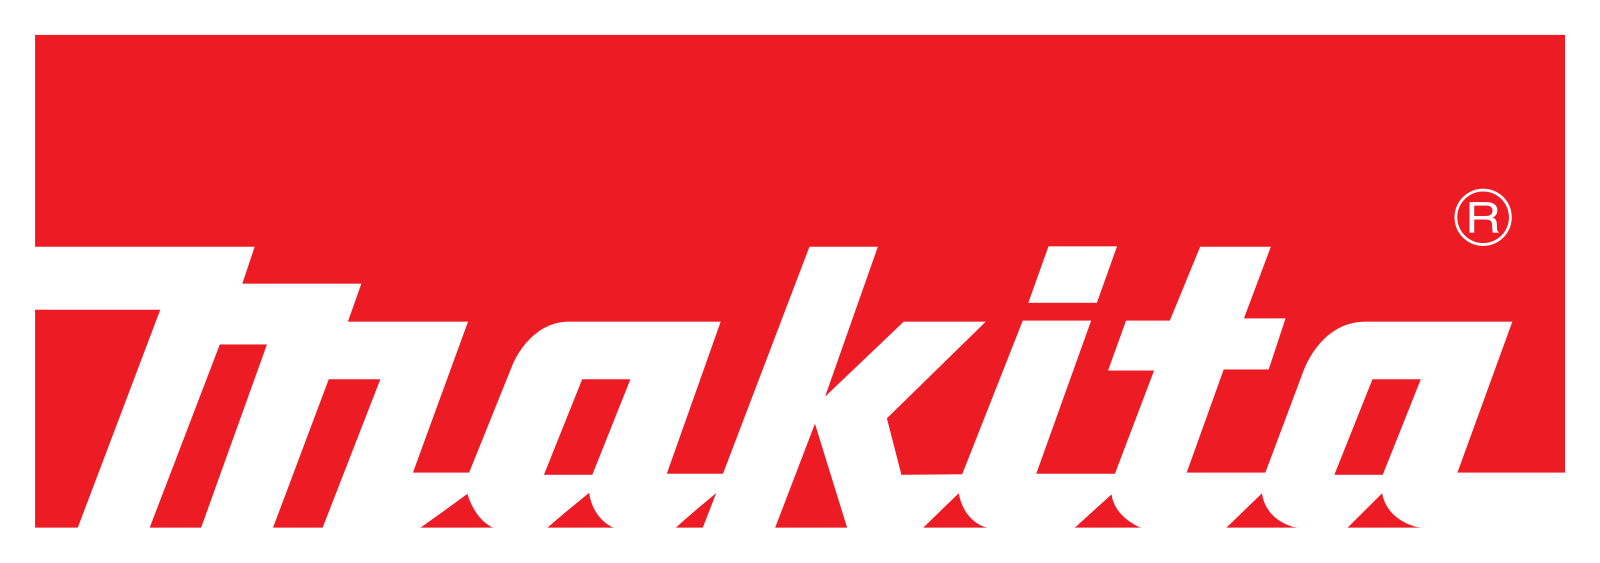 Логотип Makita (Макита)